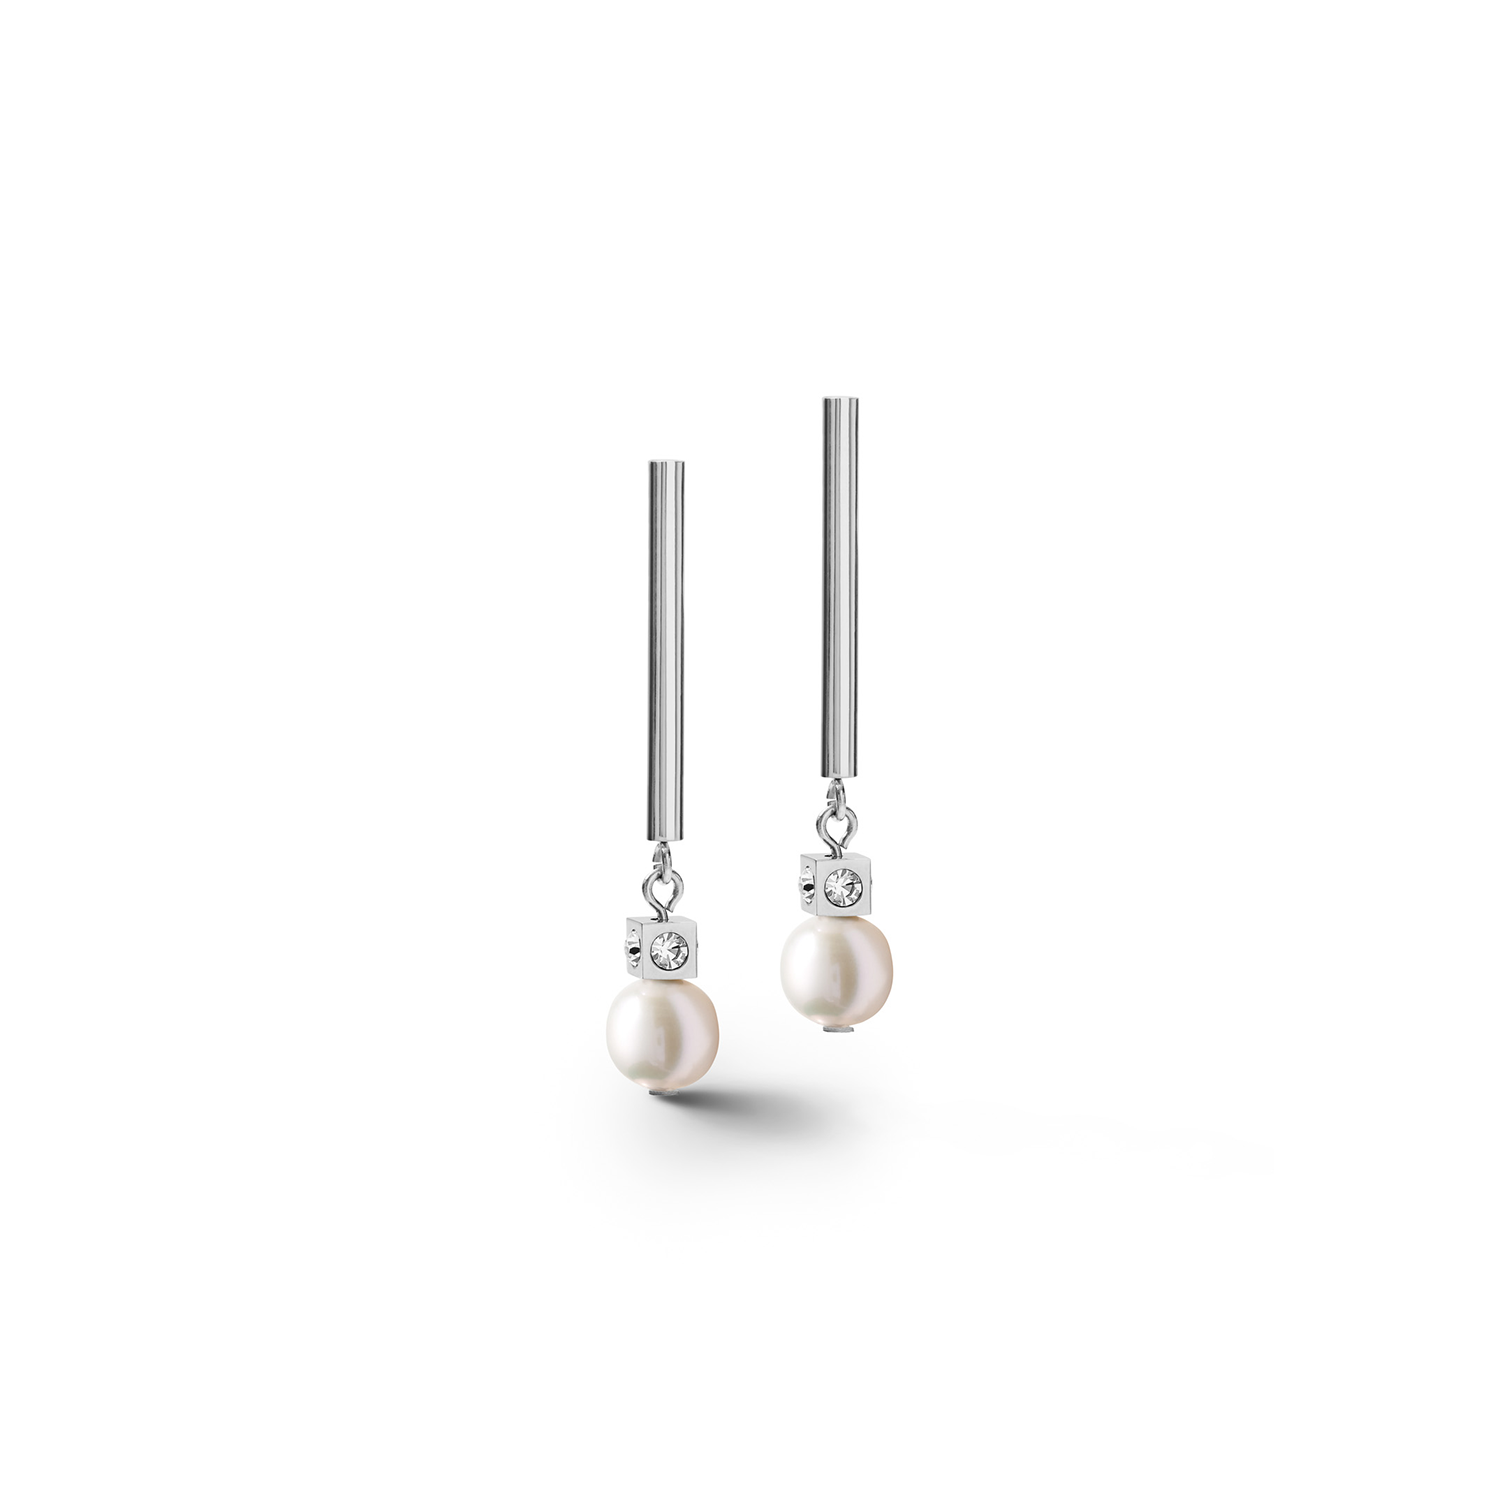 Freshwater Pearls on Stainless Steel earrings 1102/21_1417